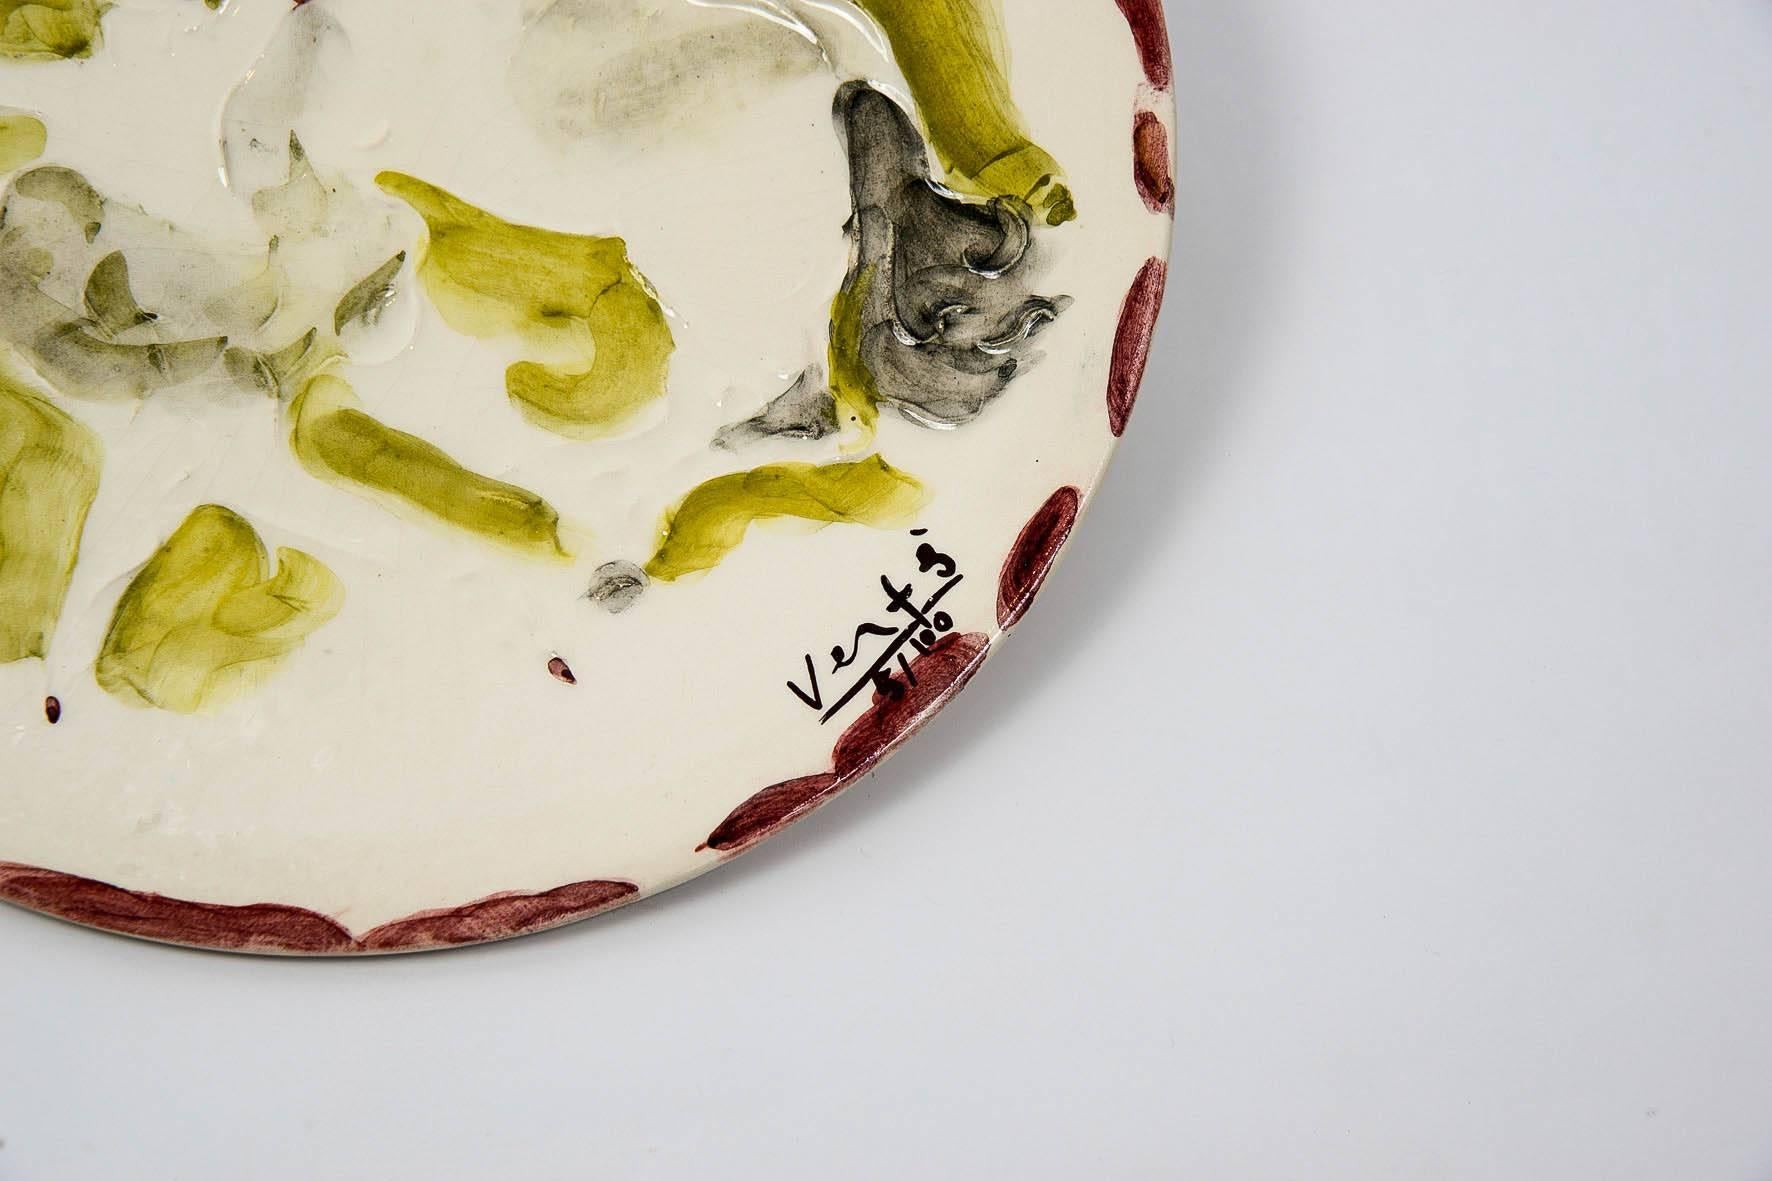 Magnifique plat en céramique de Marcel Vertes, Vallauris Tapis Vert Manufacture, circa 1950, signé,
en parfait état.